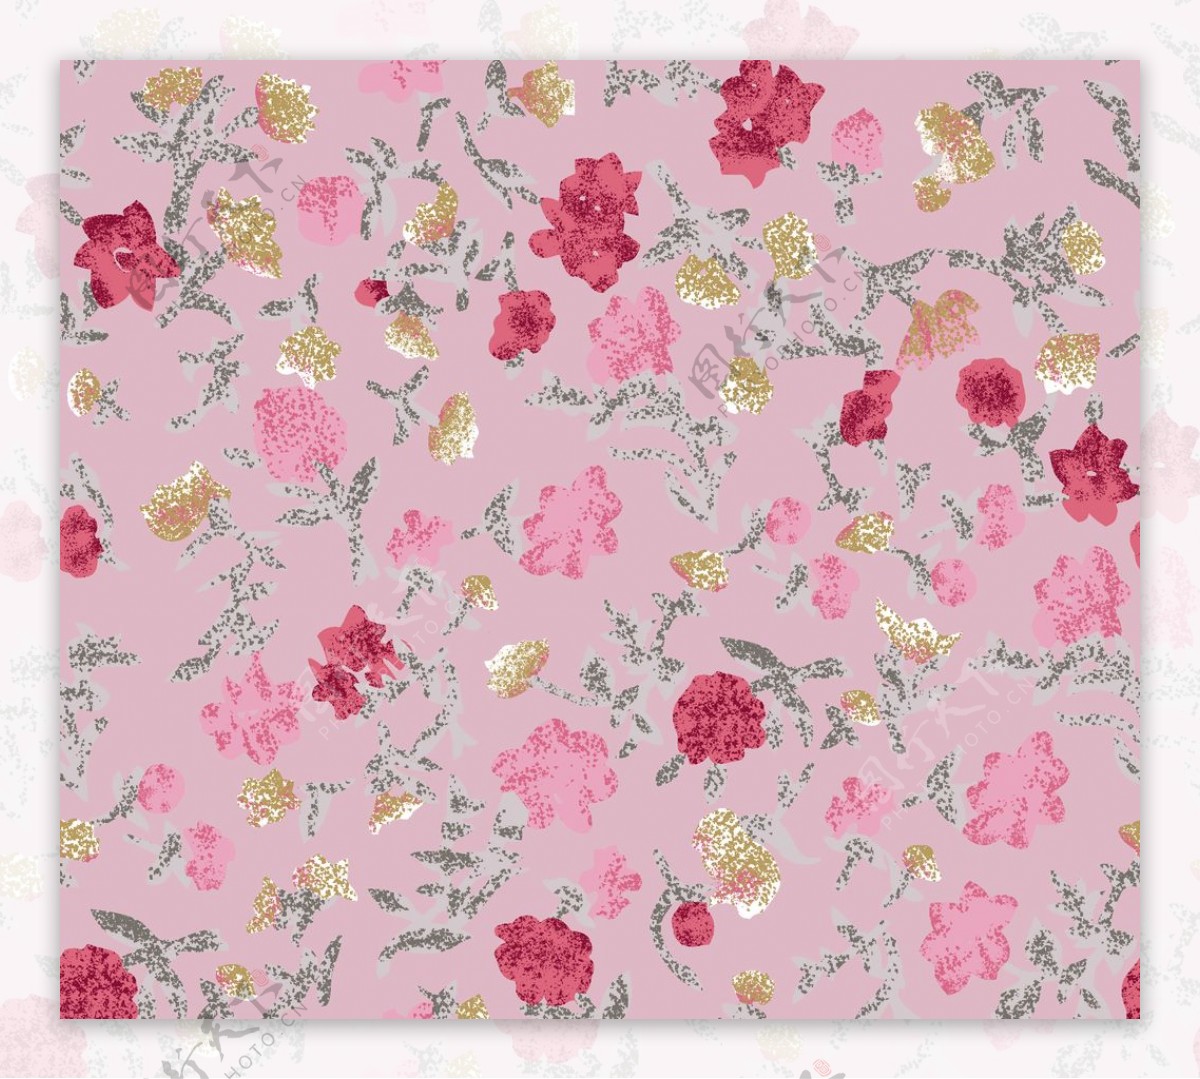 壁纸1920×1200甜美系 玫瑰花碎花图案设计壁纸,美丽碎花布 之 粉红甜美系壁纸图片-花卉壁纸-花卉图片素材-桌面壁纸